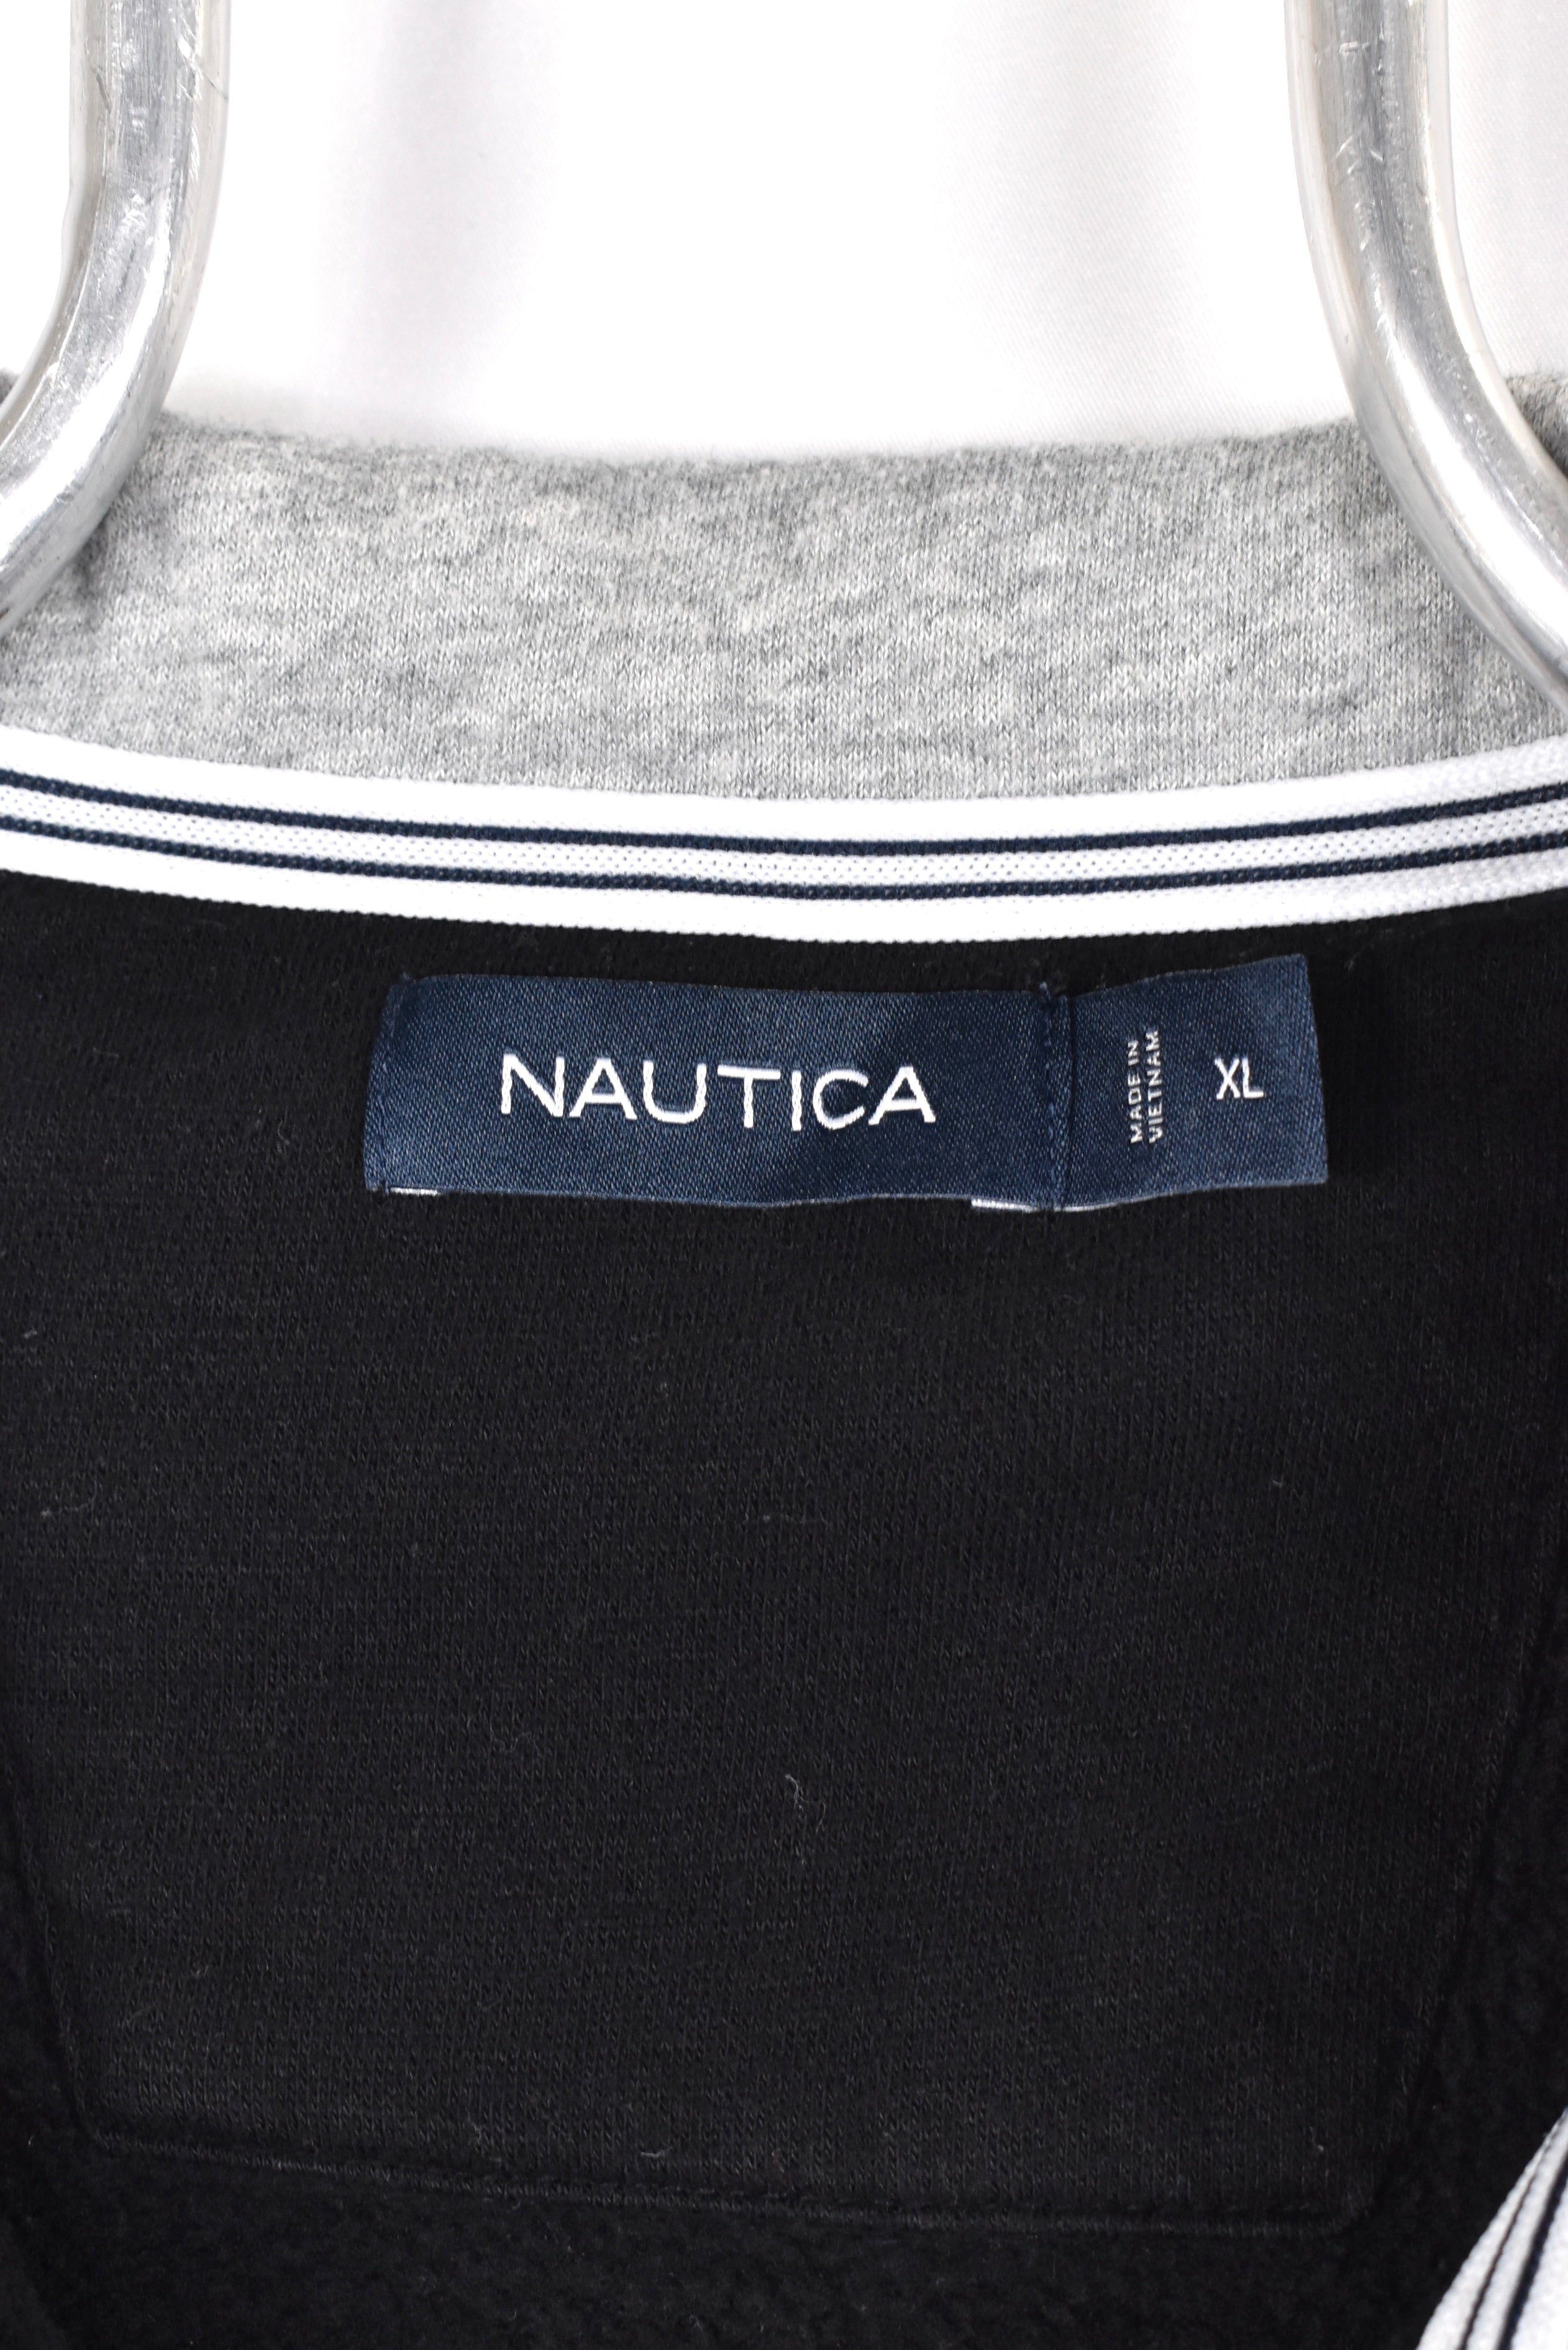 Vintage Nautica sweatshirt, black embroidered 1/4 zip jumper - AU Large NAUTICA